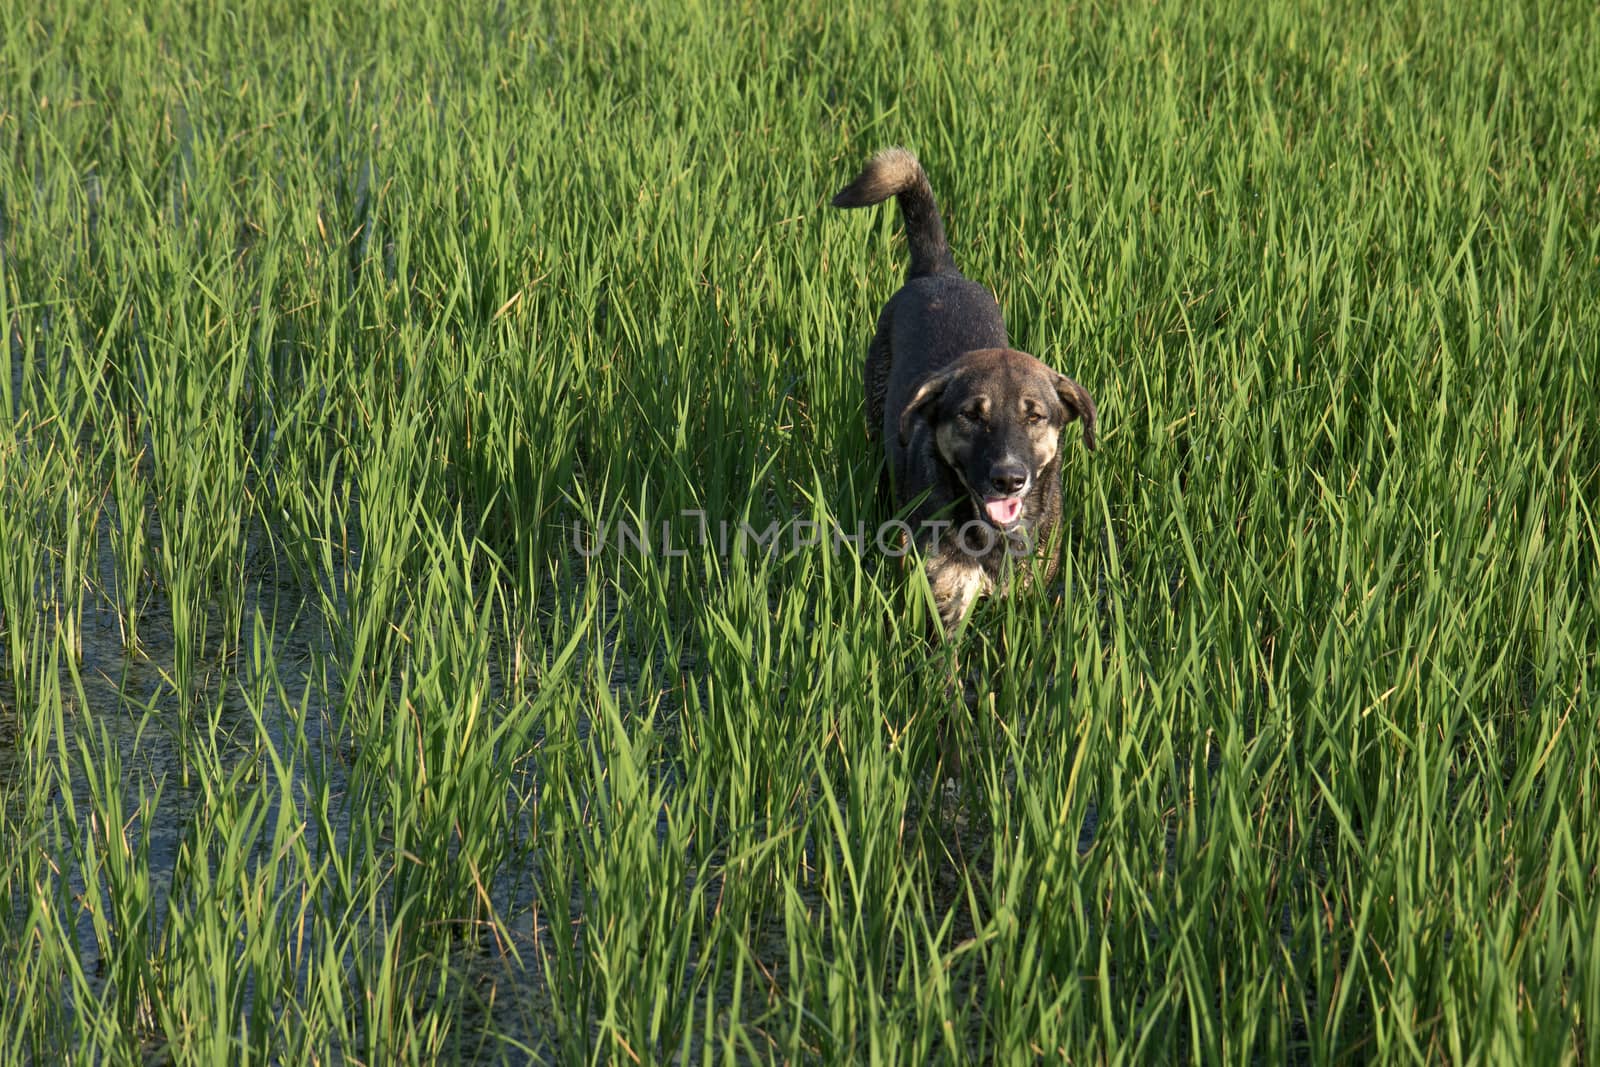 Dogs walking in rice fields.